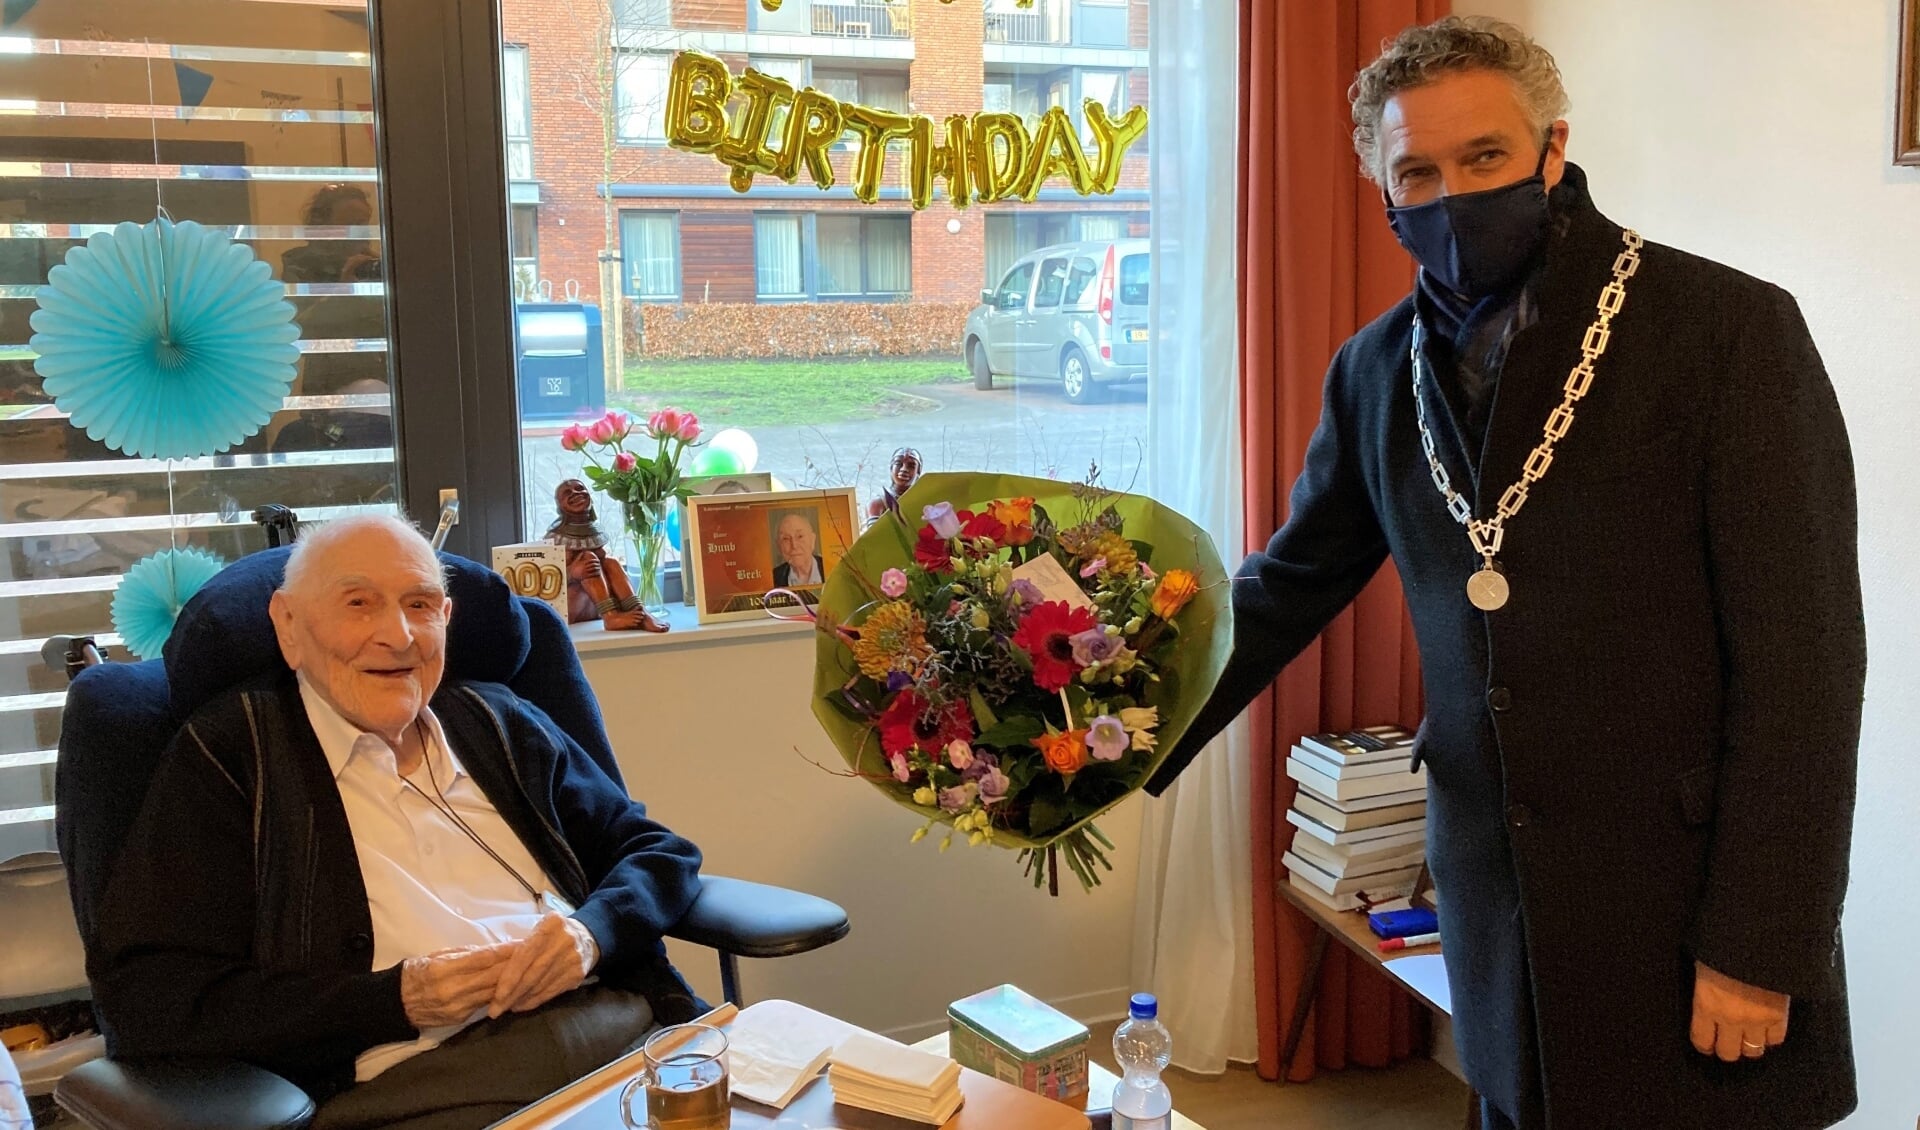 Burgemeester Teunissen feliciteert 100-jarige pater.